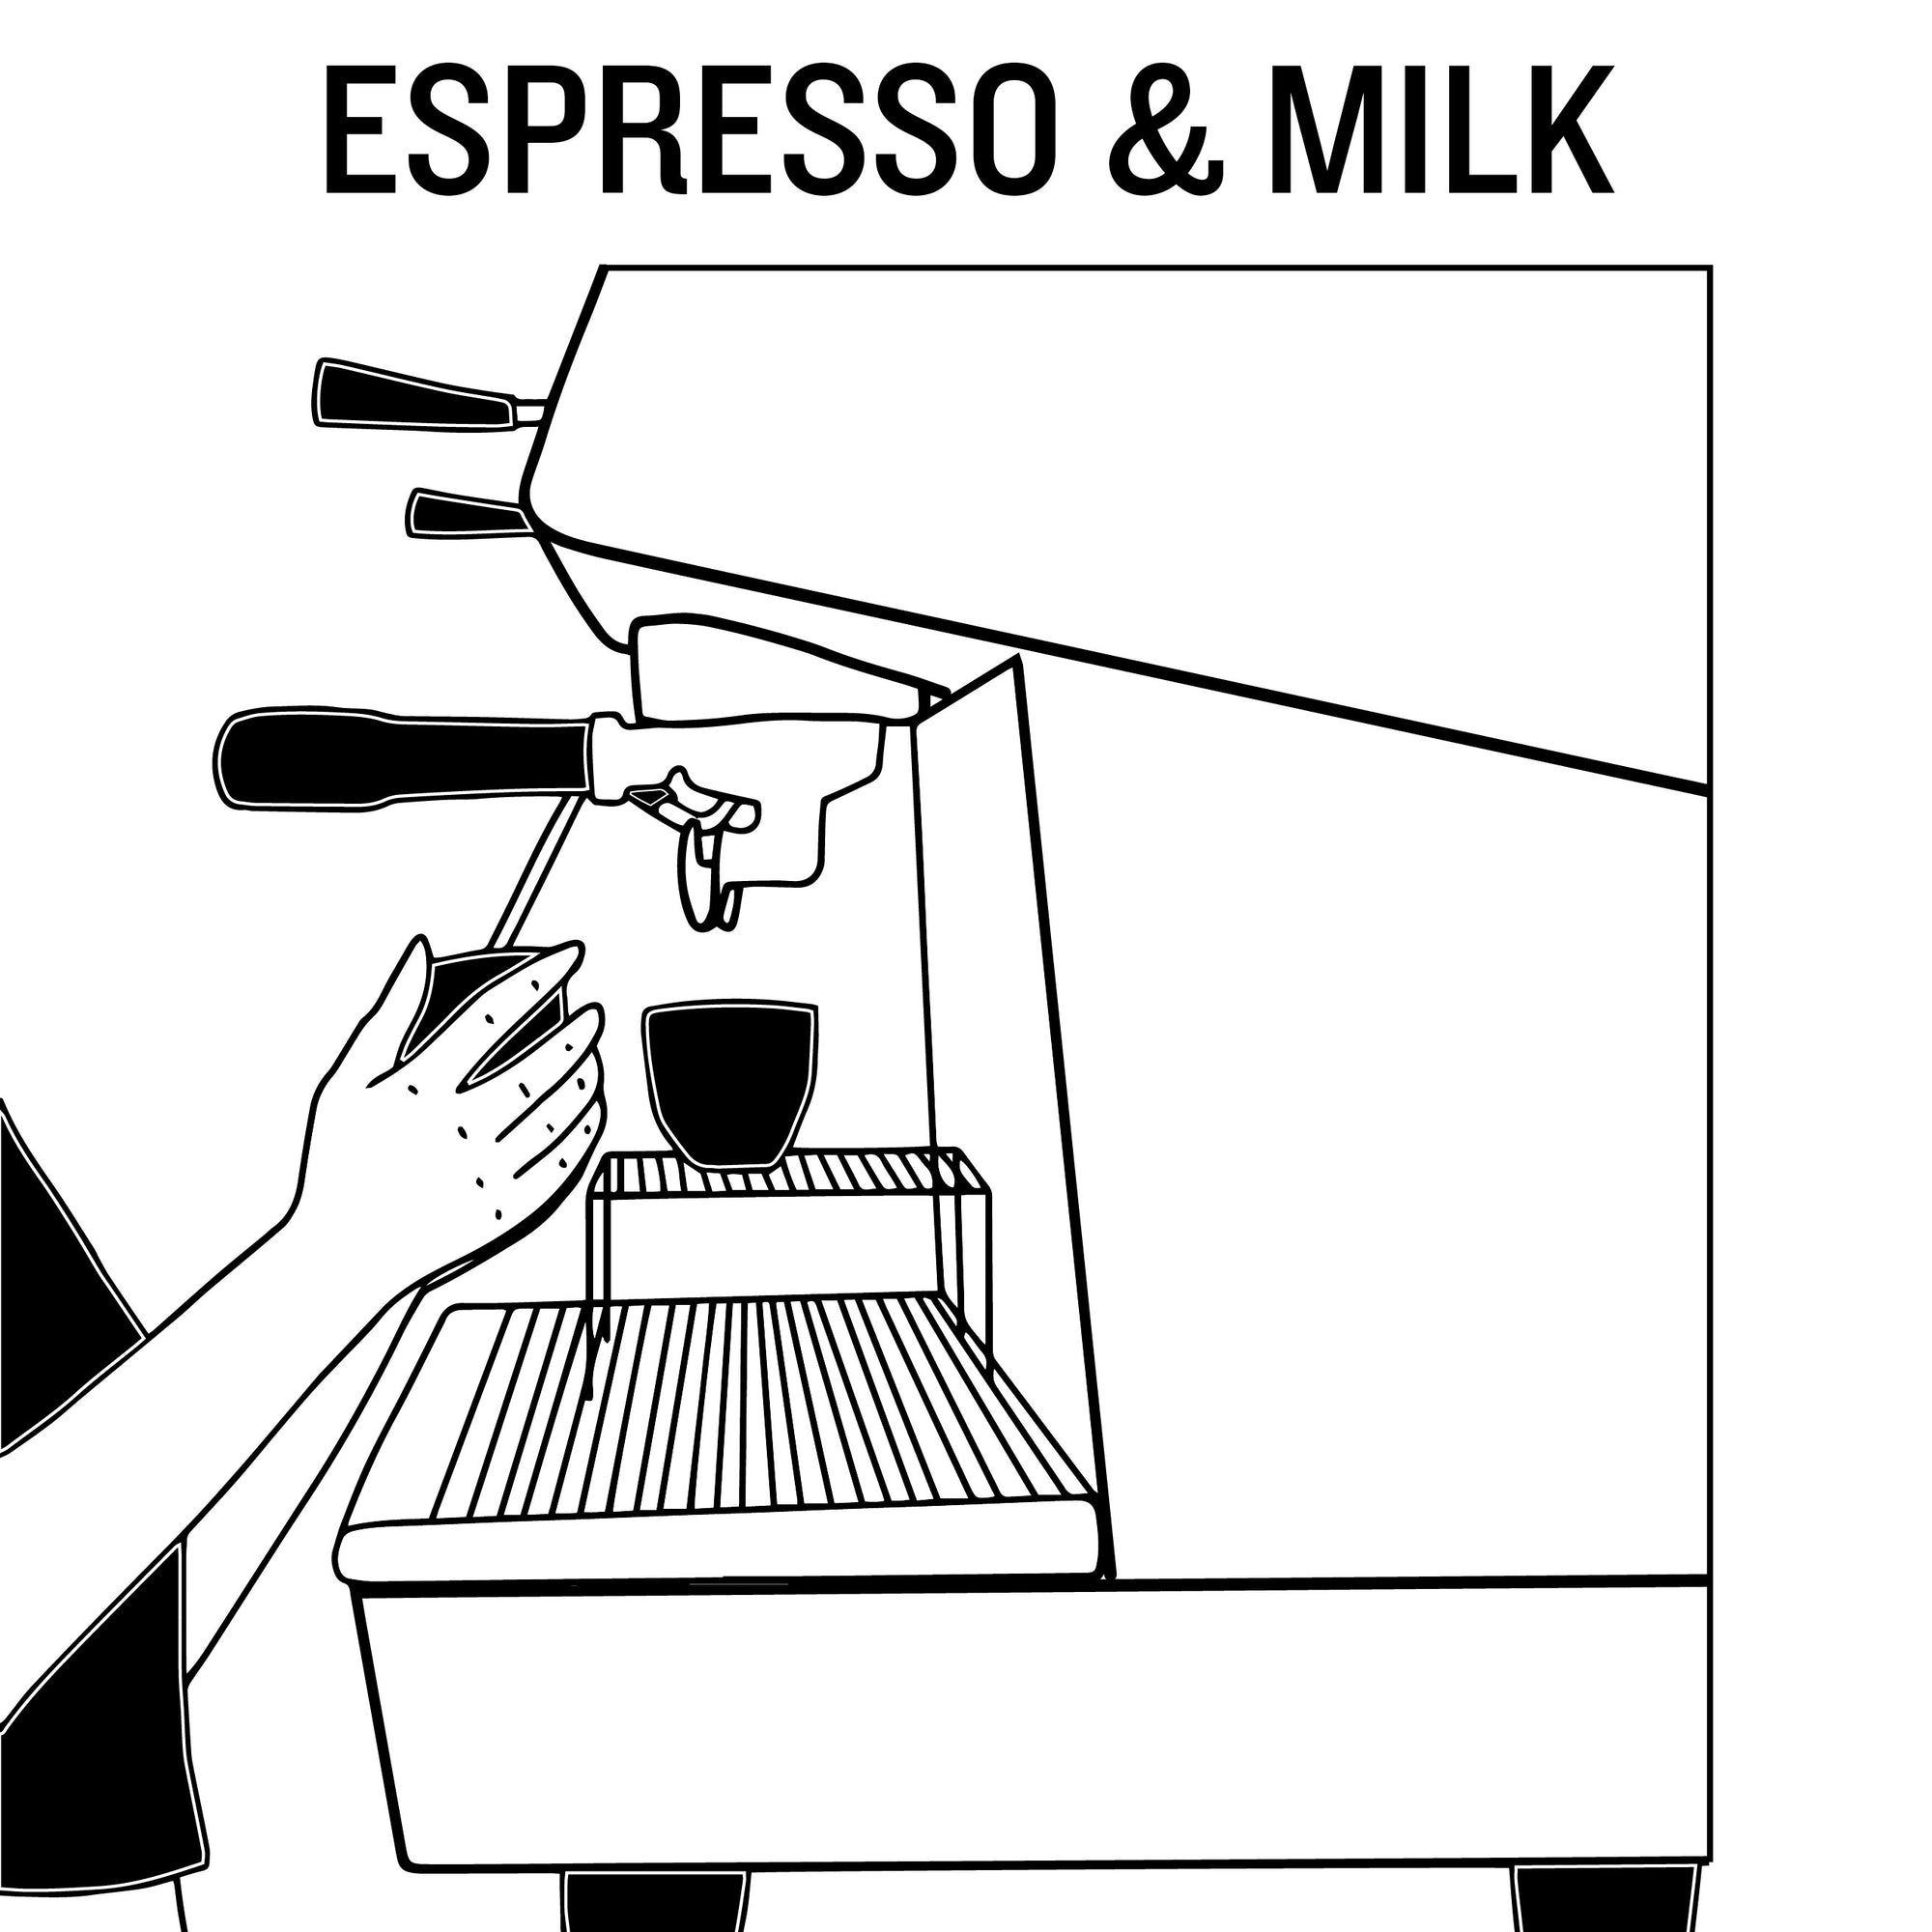 Espresso & Milk